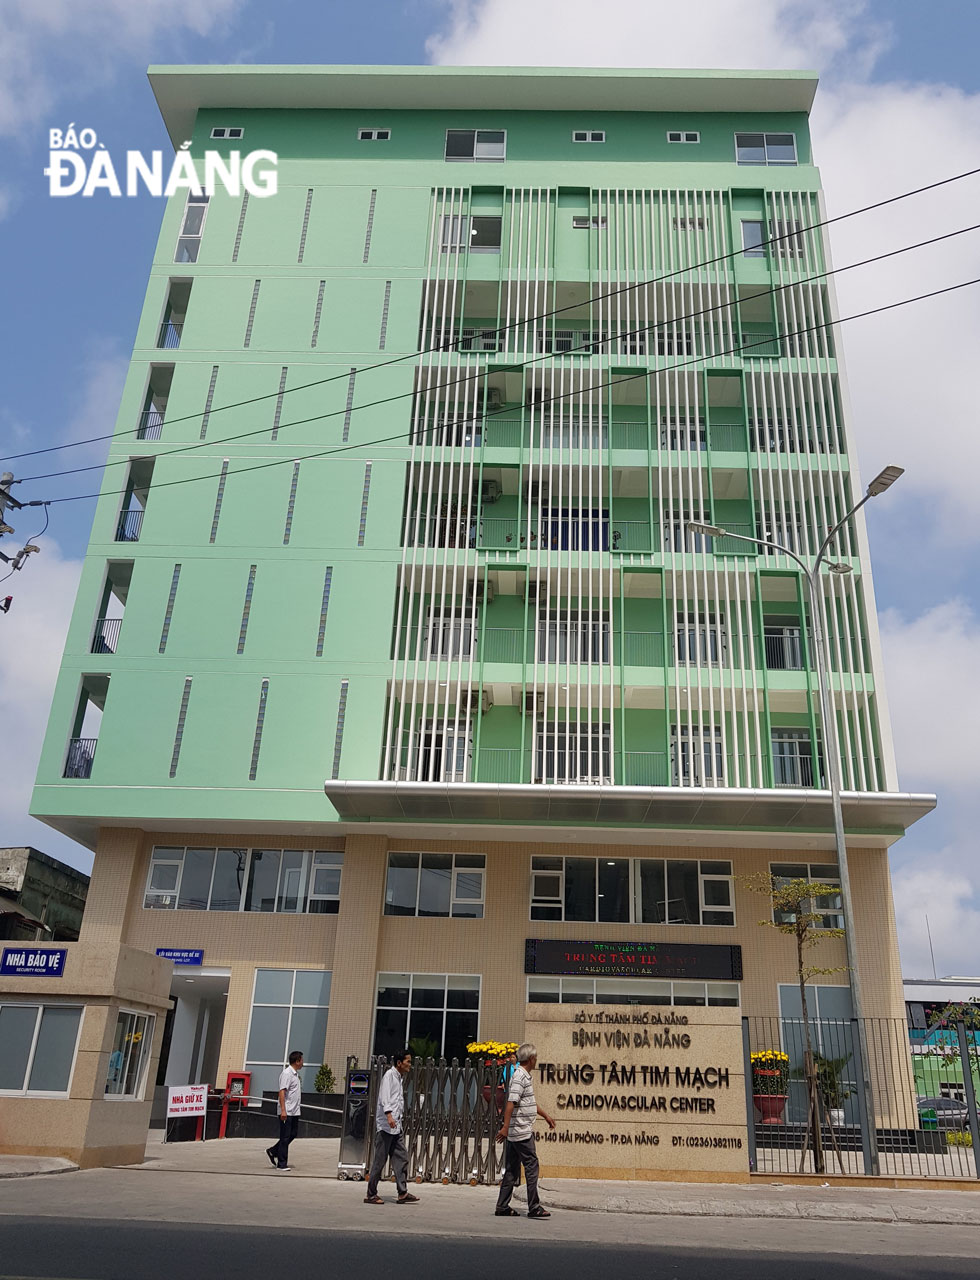 Trung tâm Tim mạch Bệnh viện Đà Nẵng được xây dựng trên diện tích gần 12.000m2, gồm 9 tầng nổi và 1 tầng hầm 